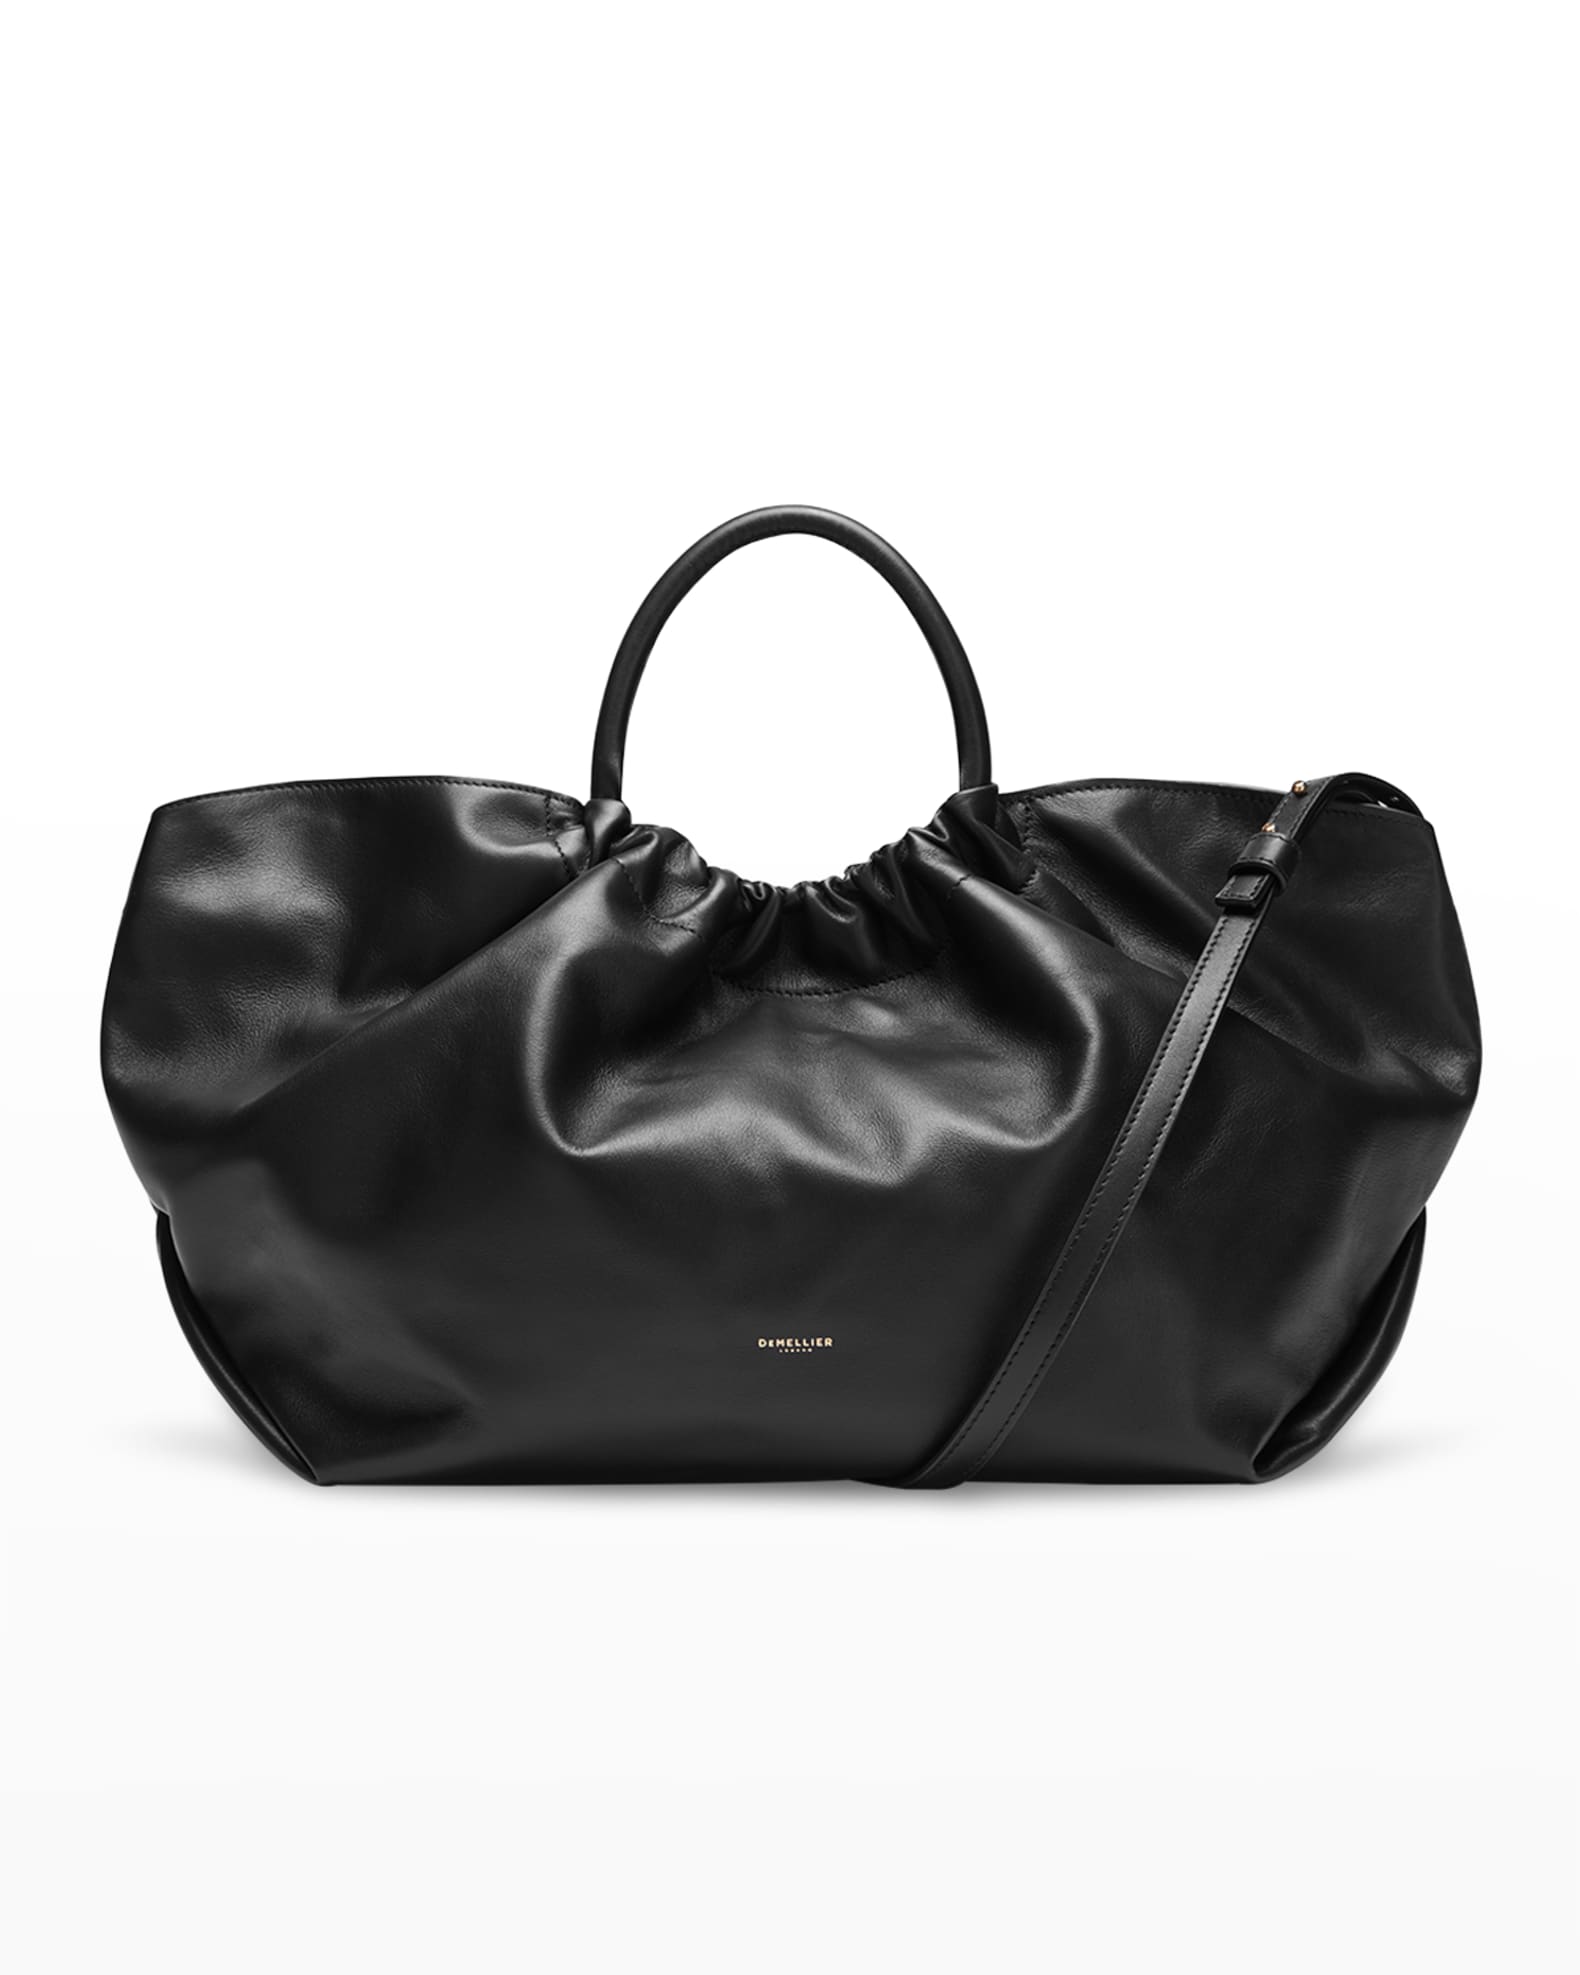 DeMellier Los Angeles Top Handle Tote Bag | Neiman Marcus